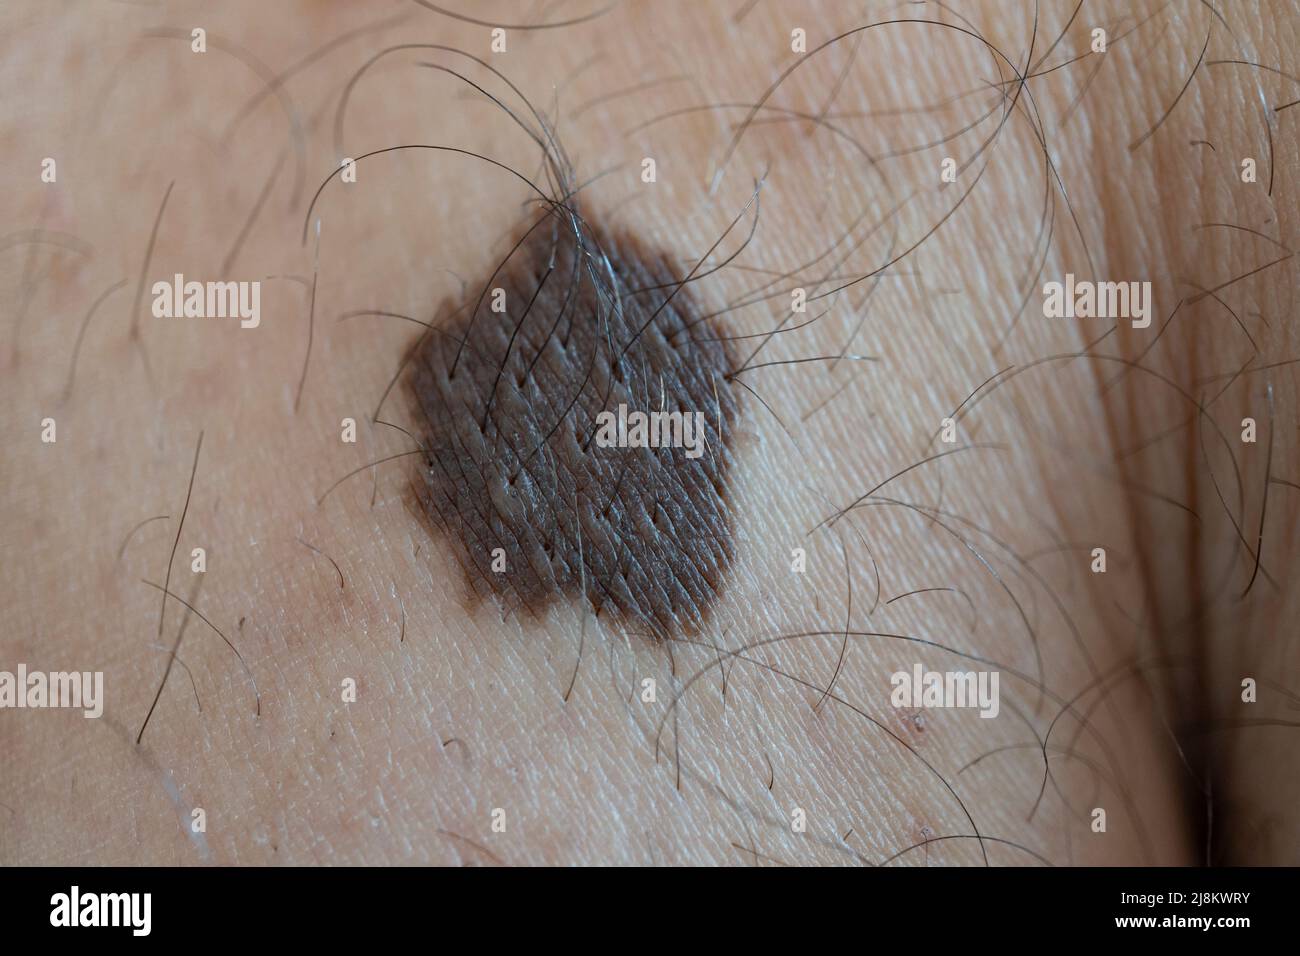 Grande talpa di pelle sulla gamba di un ragazzo giovane. Immagine macro. Foto Stock